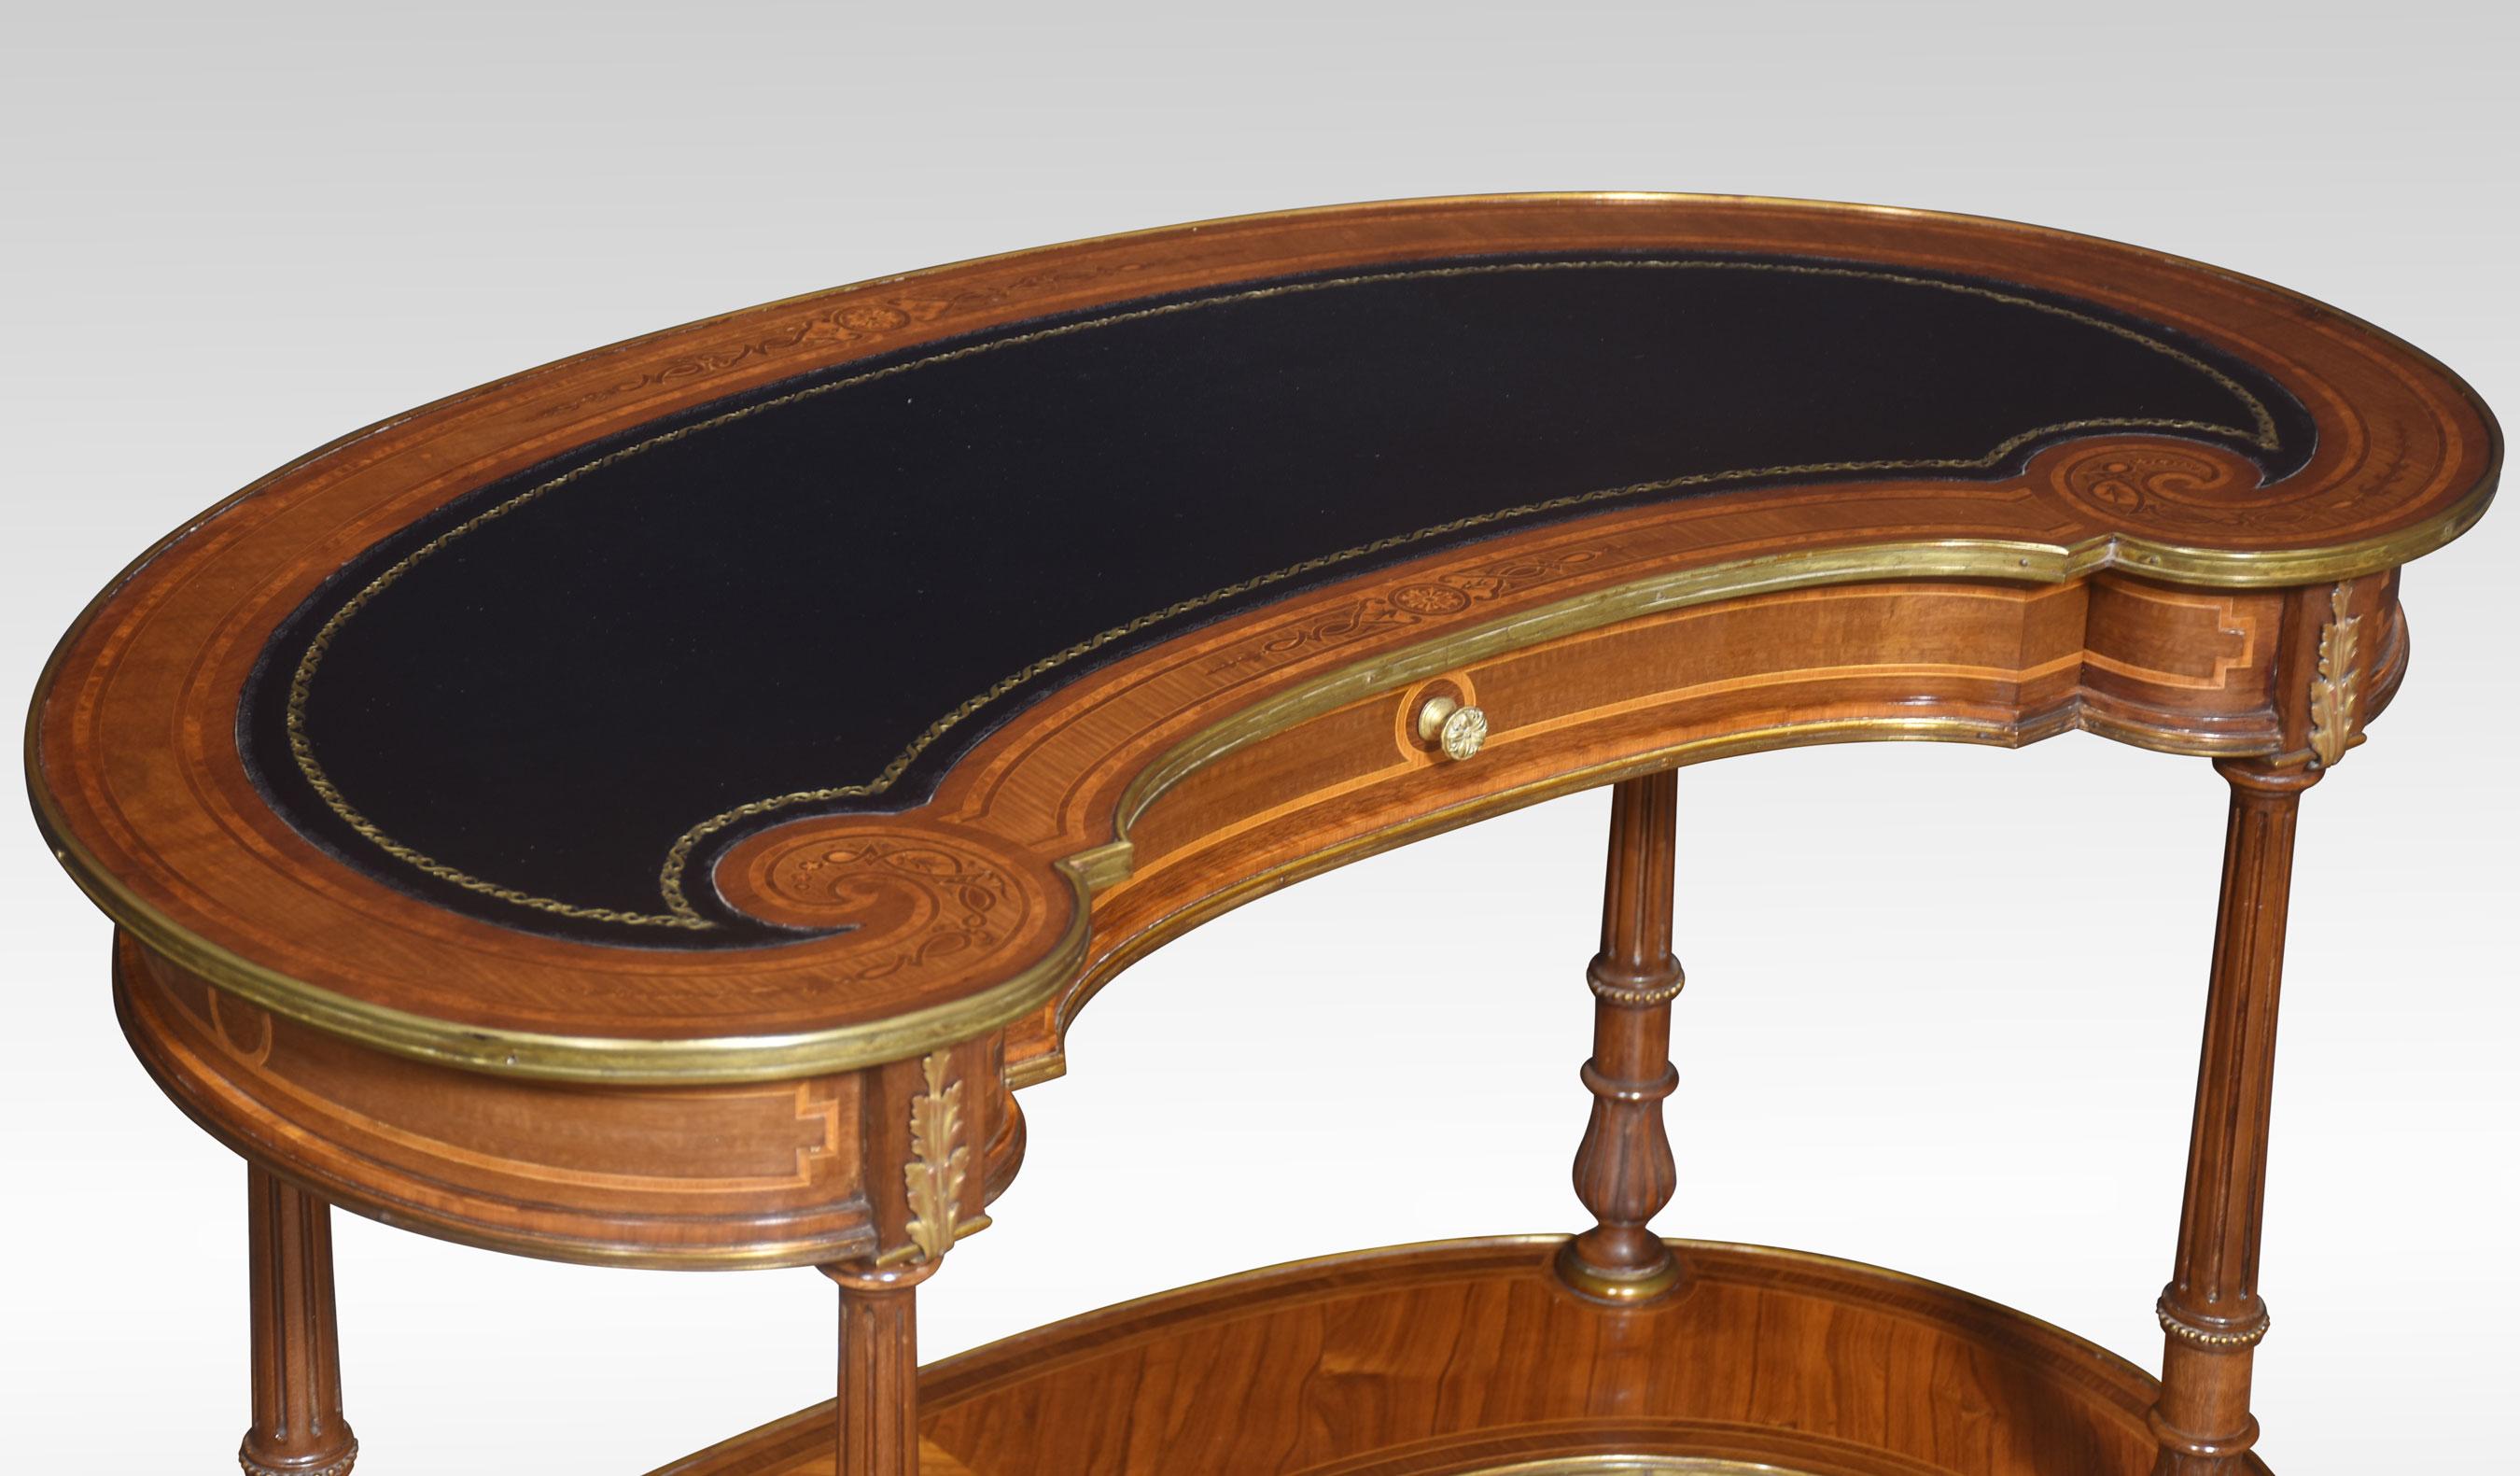 Nierenförmiger Schreibtisch aus Nussbaum und Intarsien in der Art von Holland & Sons. Die geformte Platte ist mit einer blauen Lederschreibfläche versehen, die von einer eingelegten Bordüre und Messingbändern umgeben ist. Der Fries ist mit einer